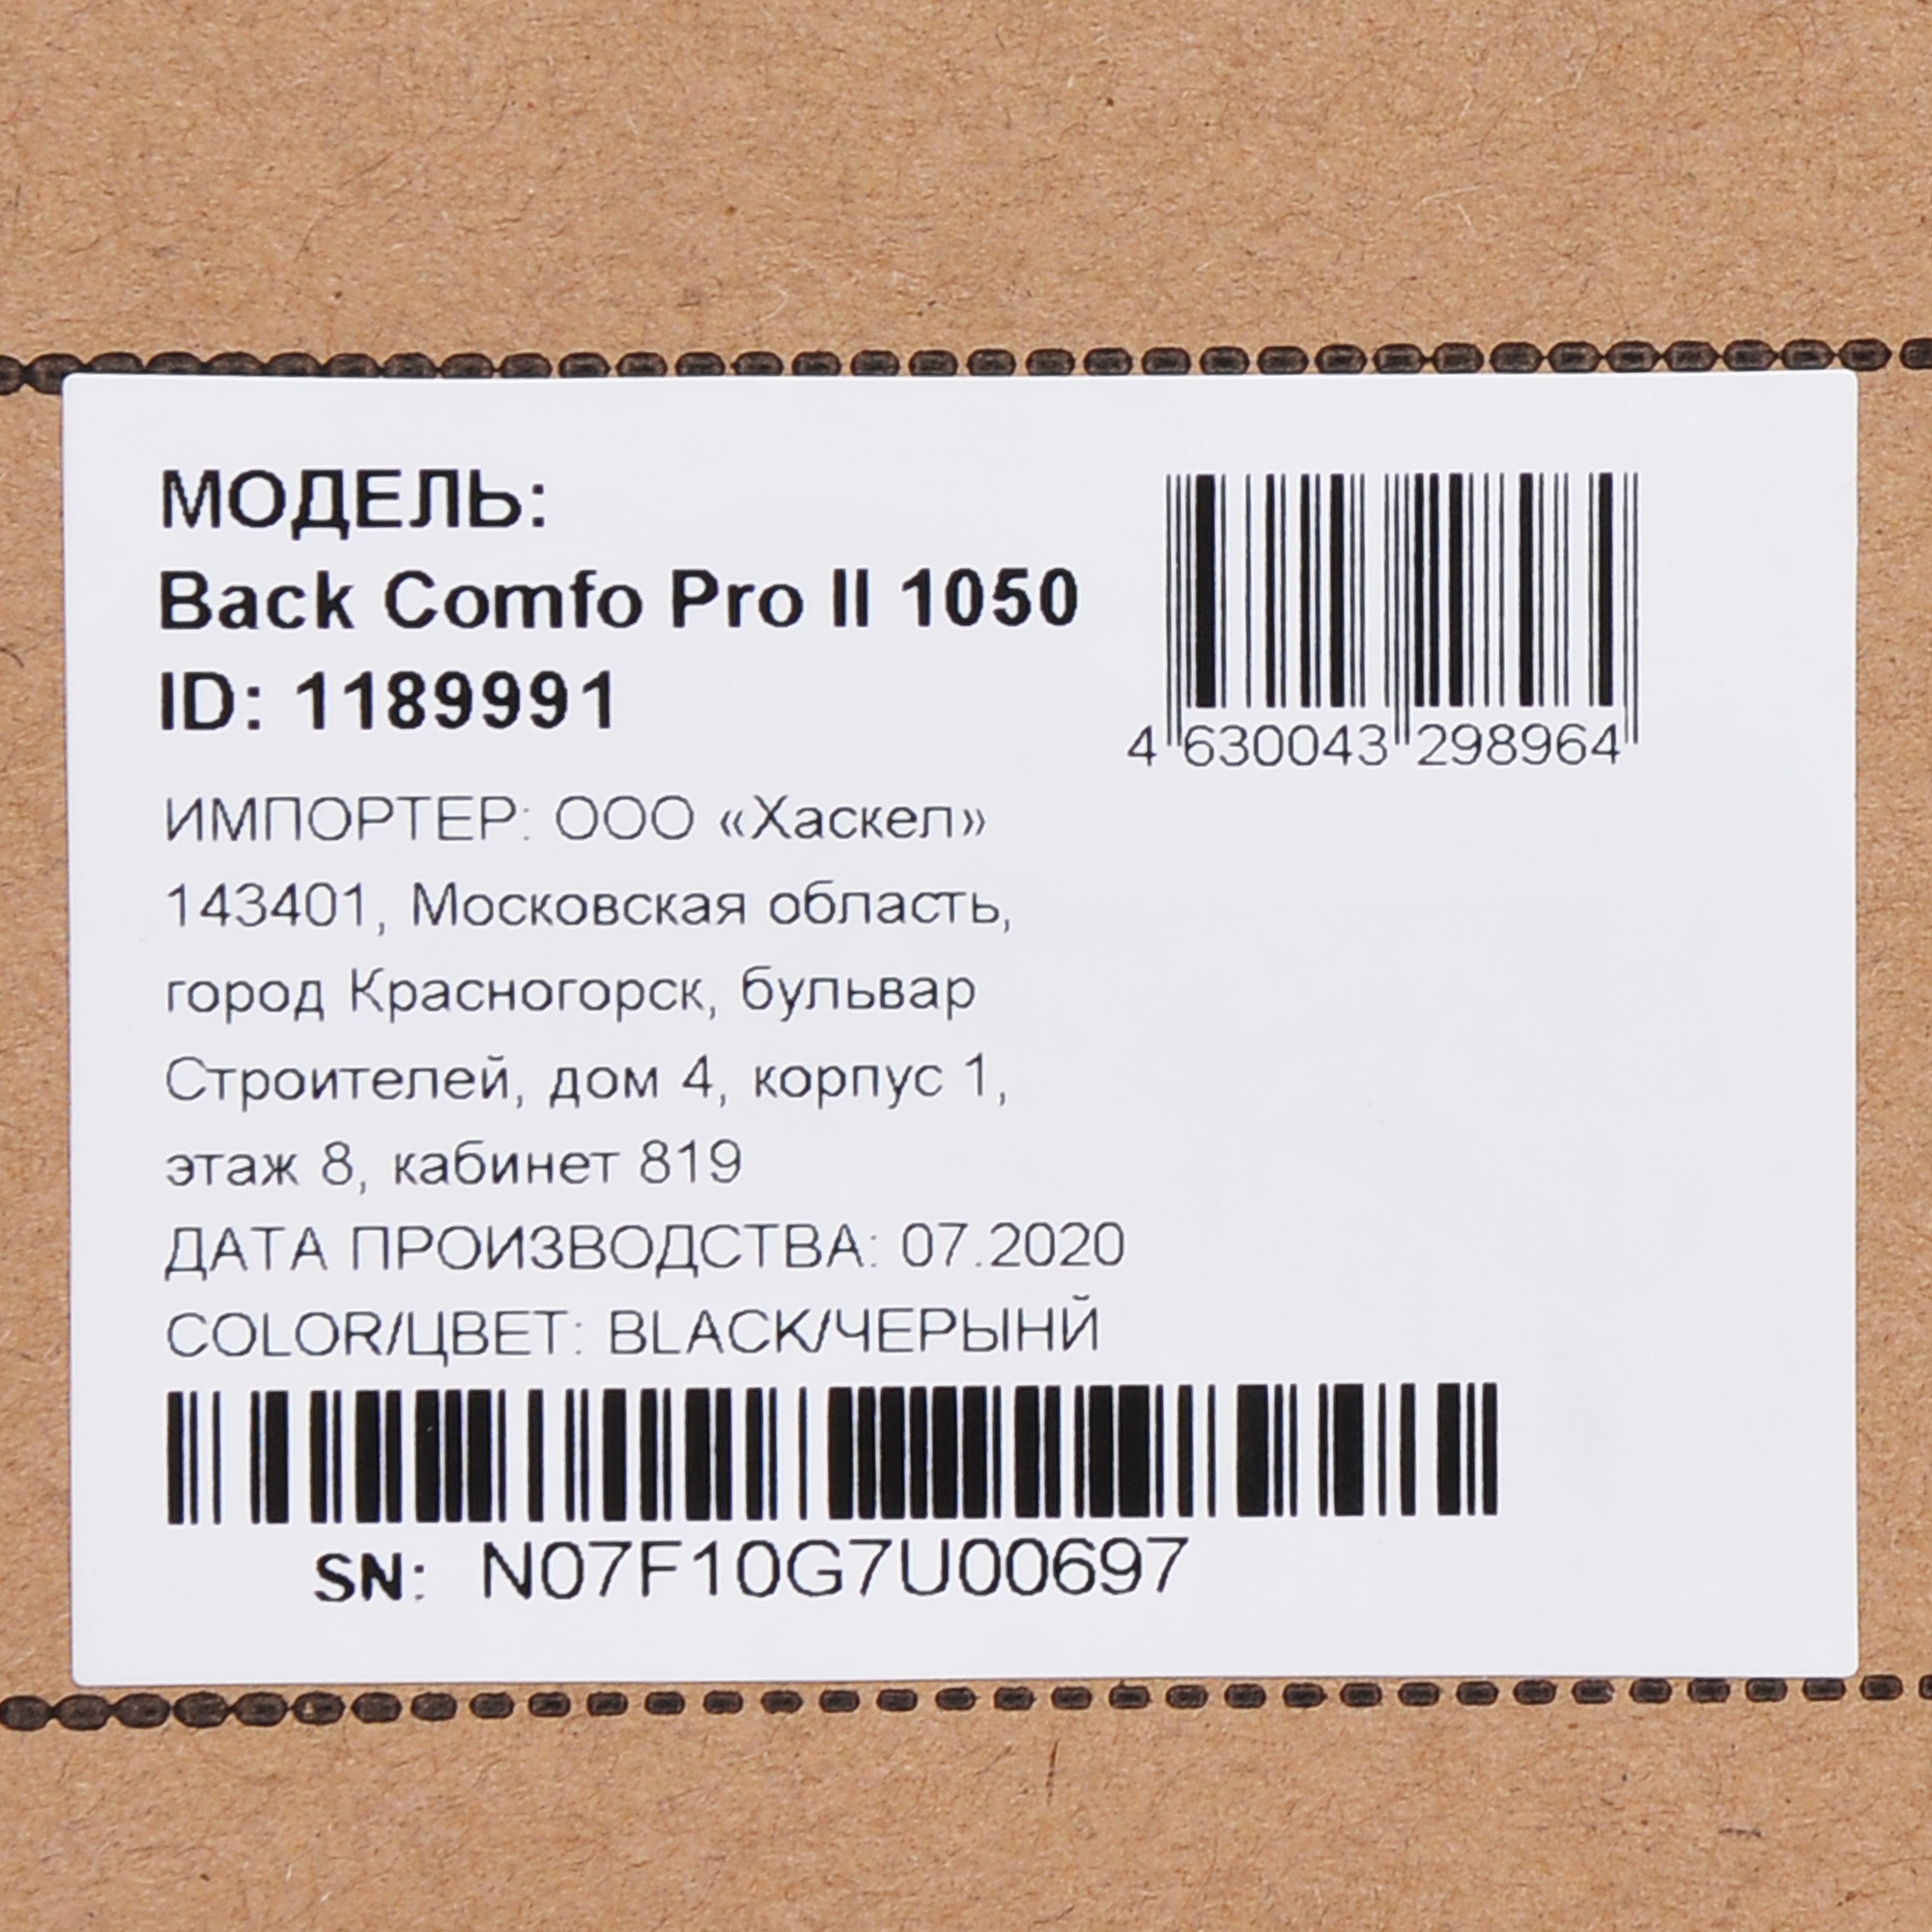 Back comfo pro ii 650. ИБП back Comfo Pro II 650. ИБП Ippon Comfo Pro II 1050. Ippon back Comfo Pro II 650 650 ва. ИБП Ippon back Comfo Pro II 650.